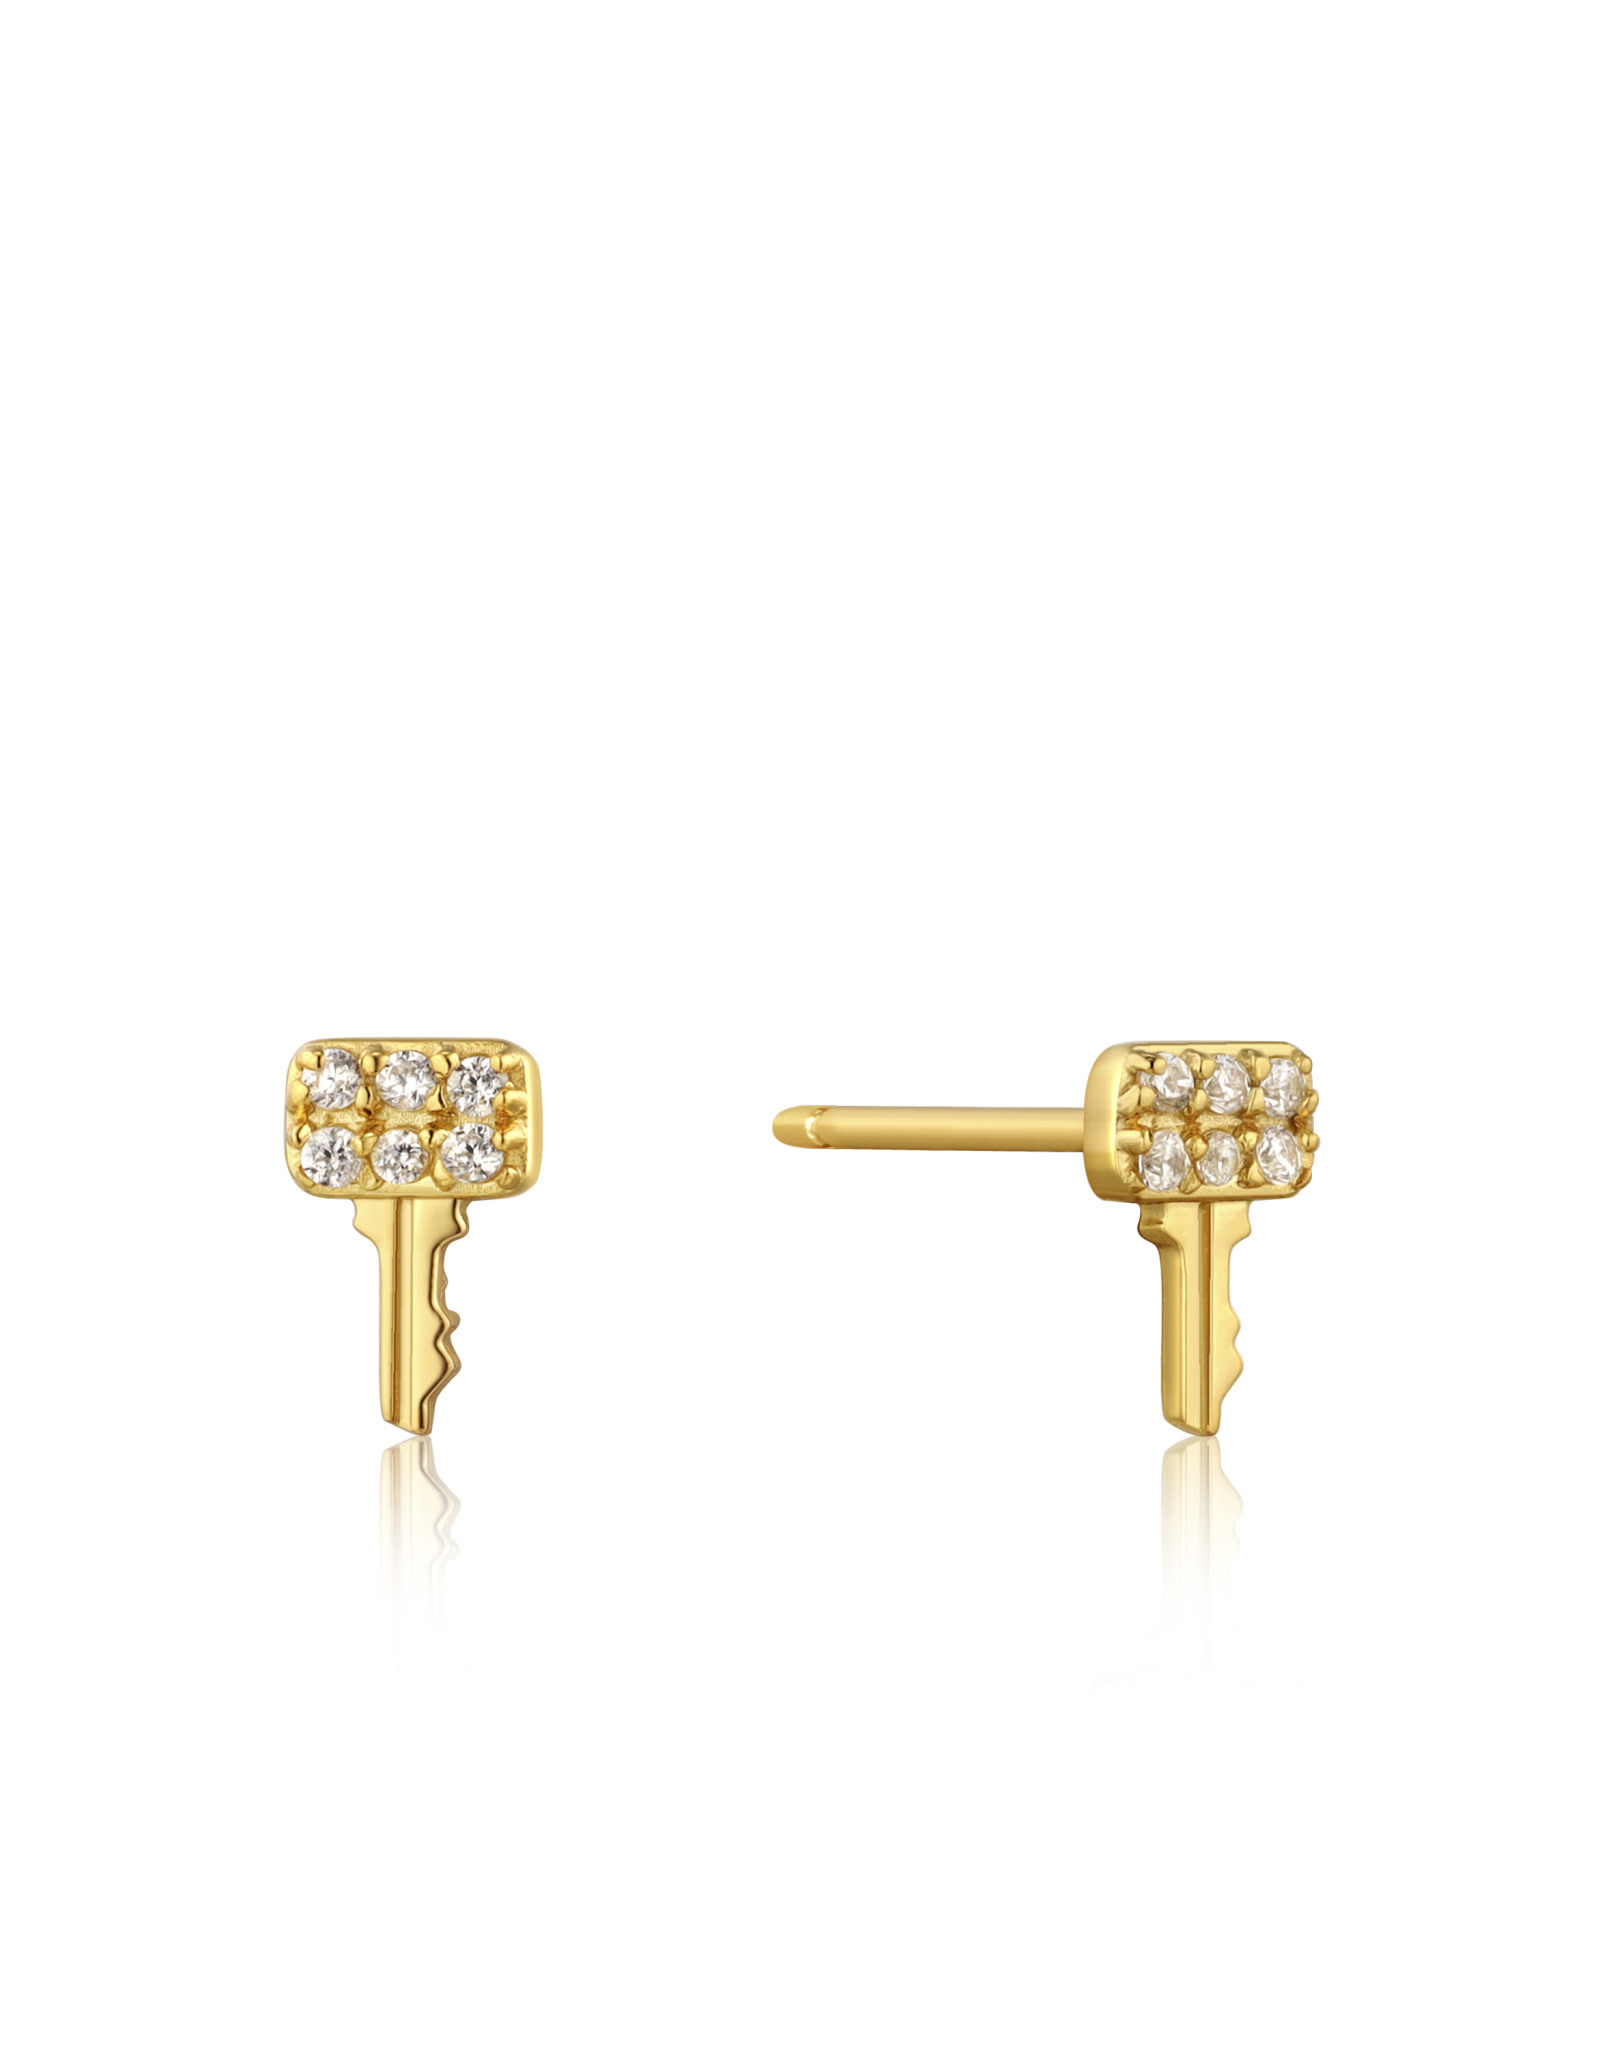 Ania Haie Ania Haie - Gold key sparkle stud earrings gold